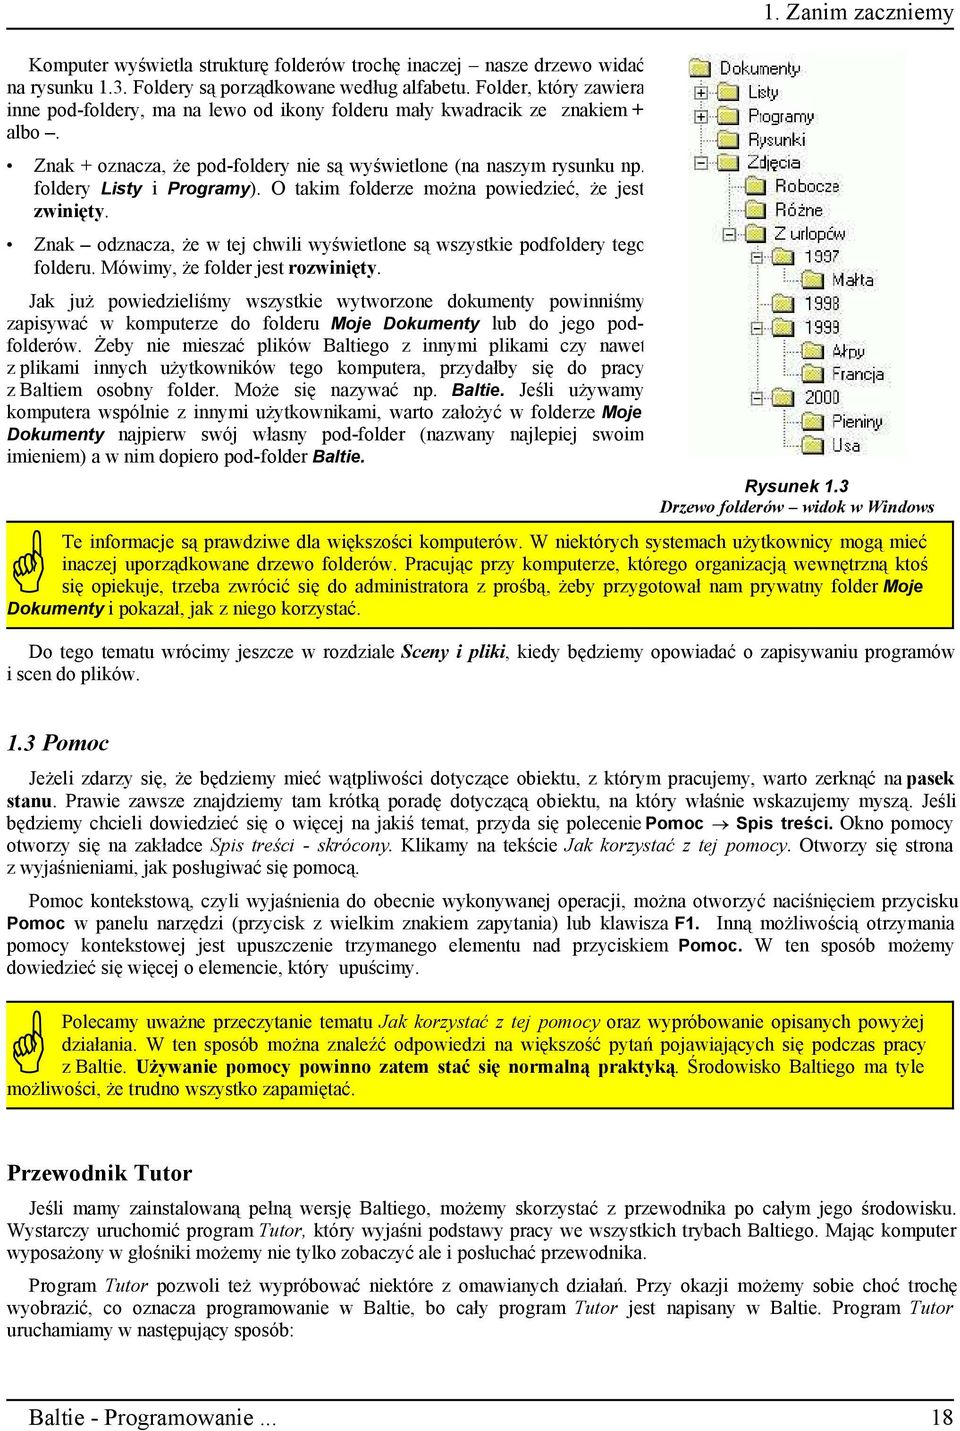 Baltie. podręcznik programowania nie tylko dla dzieci - PDF Darmowe  pobieranie